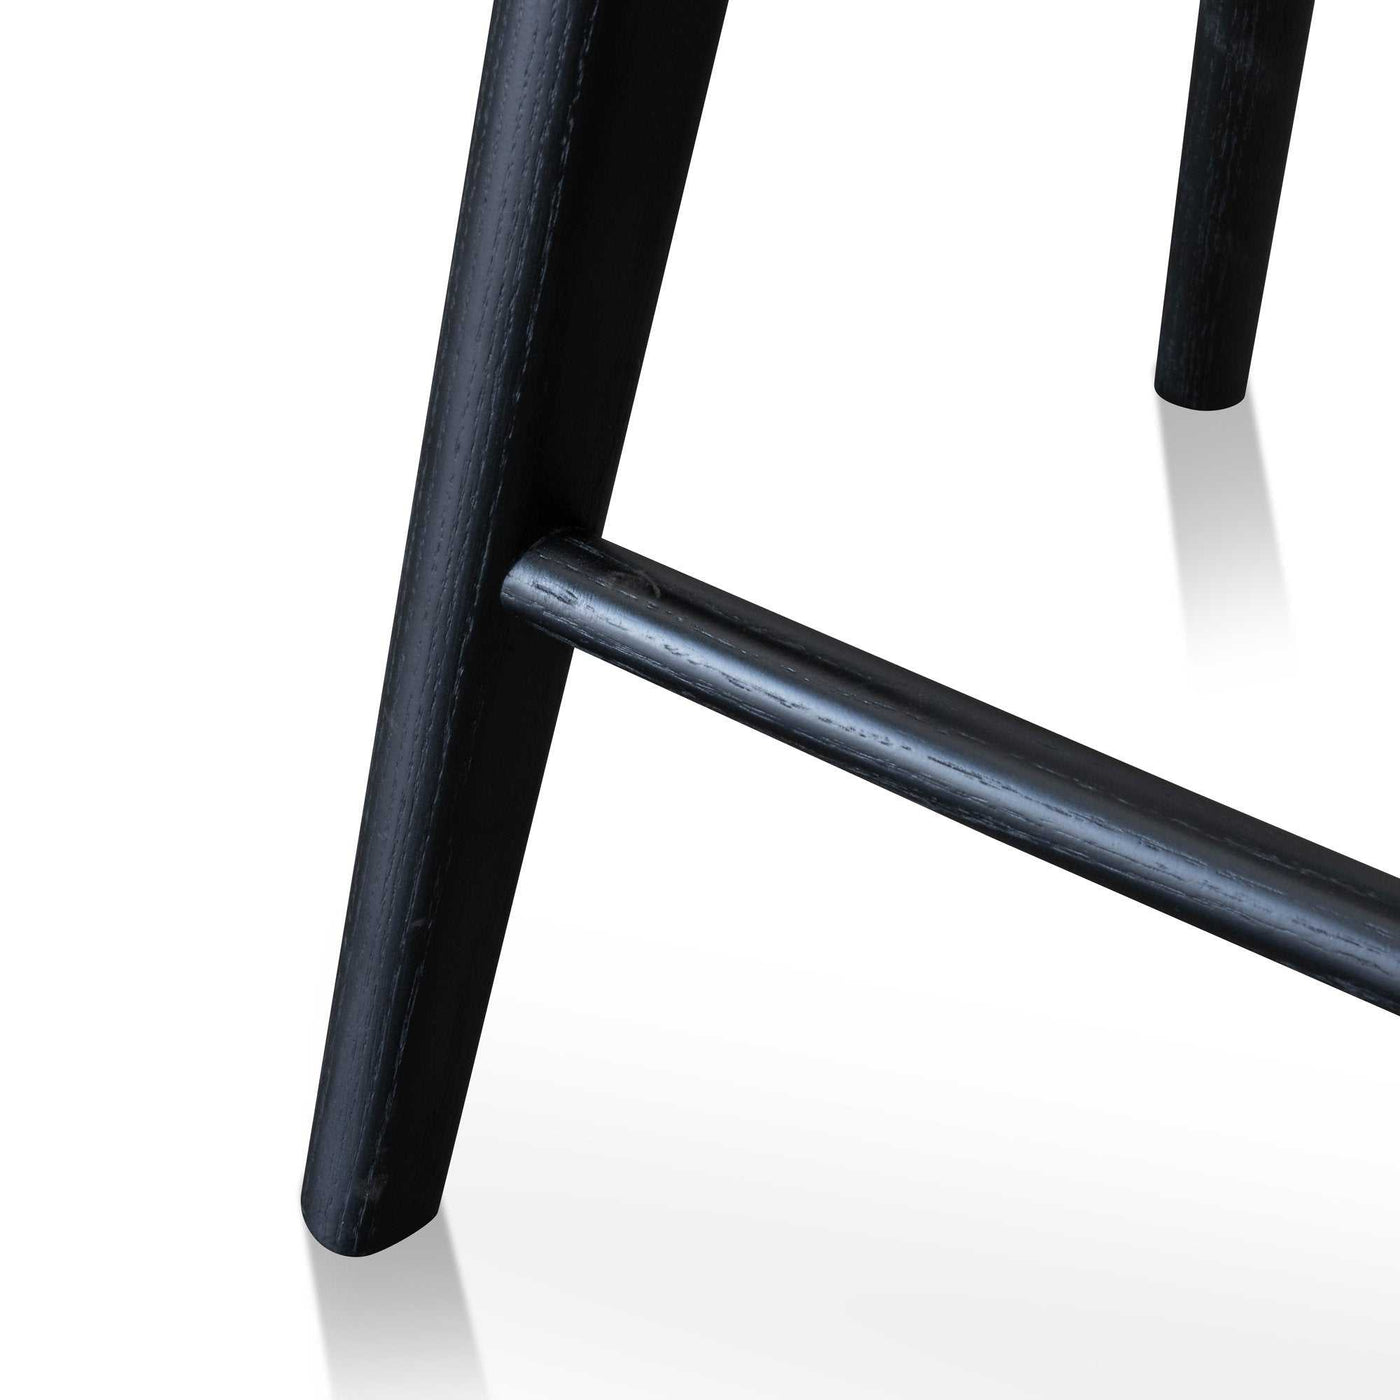 Bar stool - Black